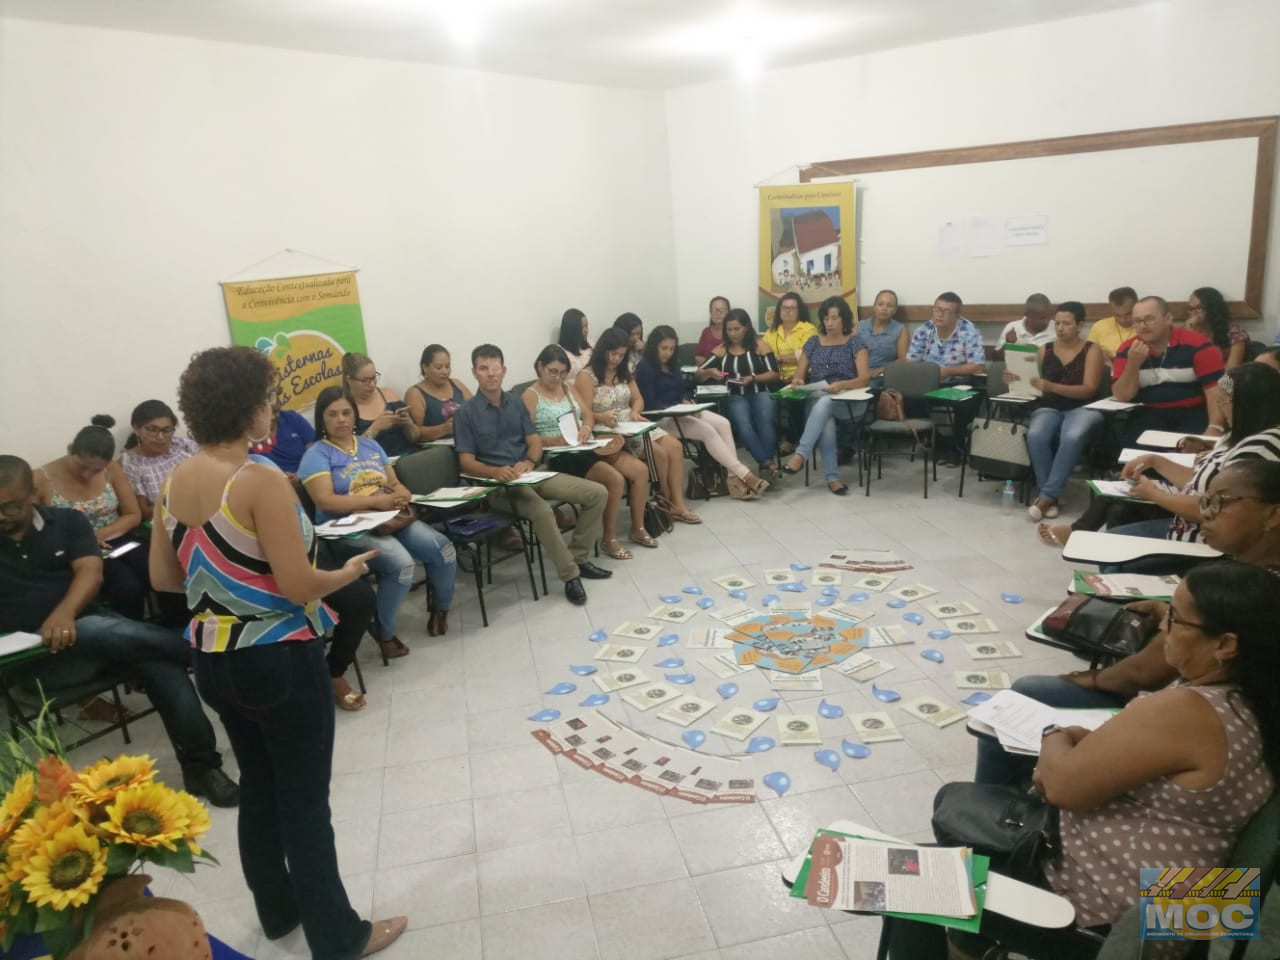 Intercâmbio Pedagógico do Programa Cisternas nas Escolas aconteceu em Feira de Santana